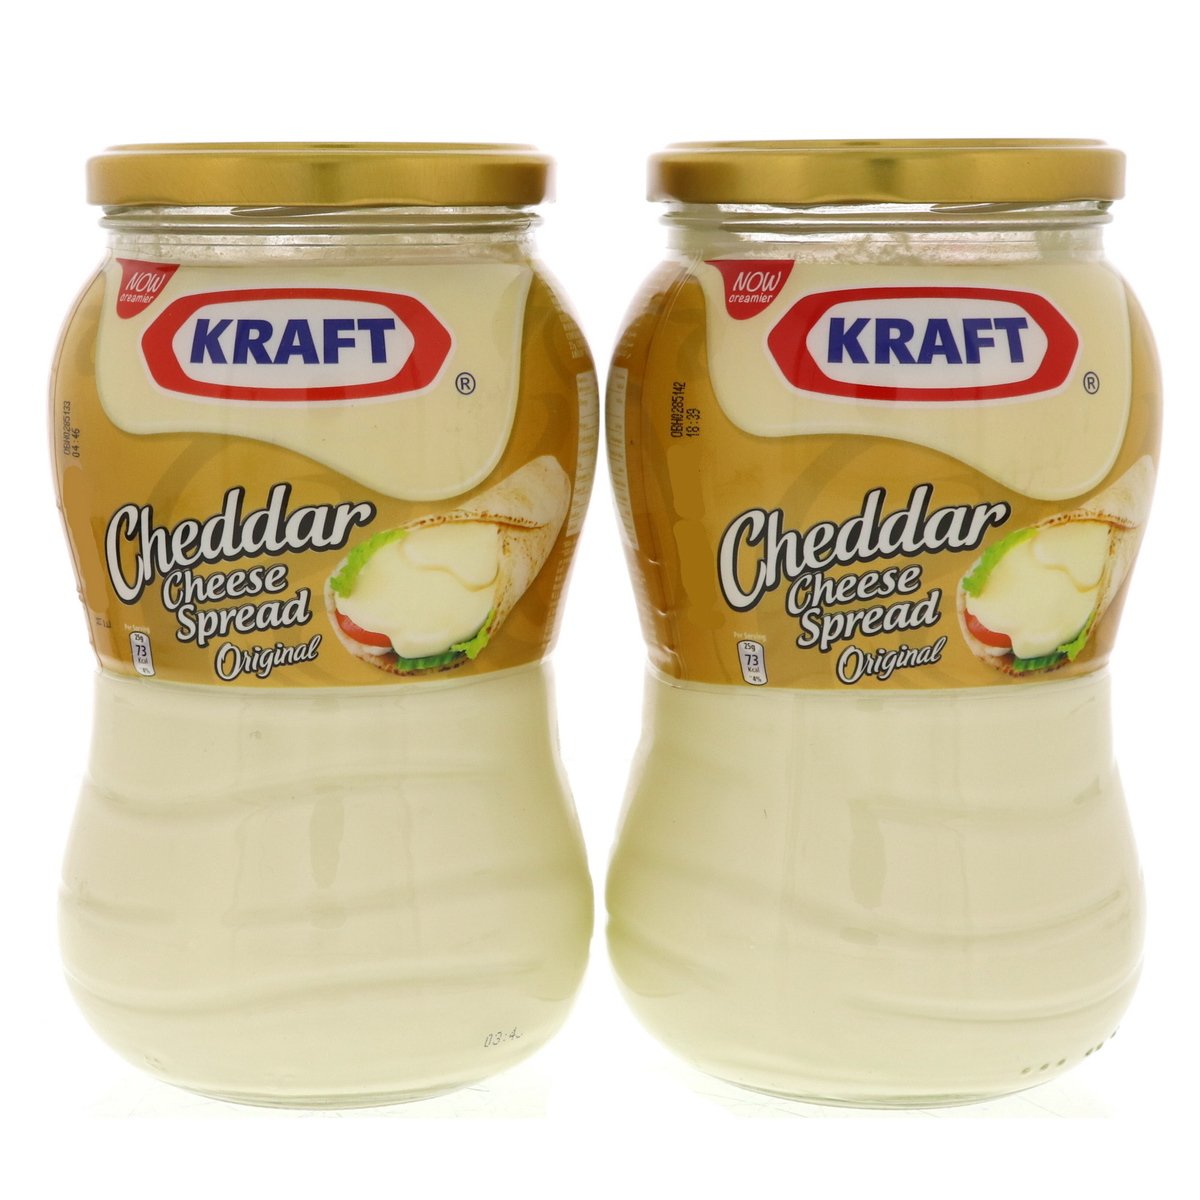 Kraft Original Cheddar Cheese Spread 2 x 870g